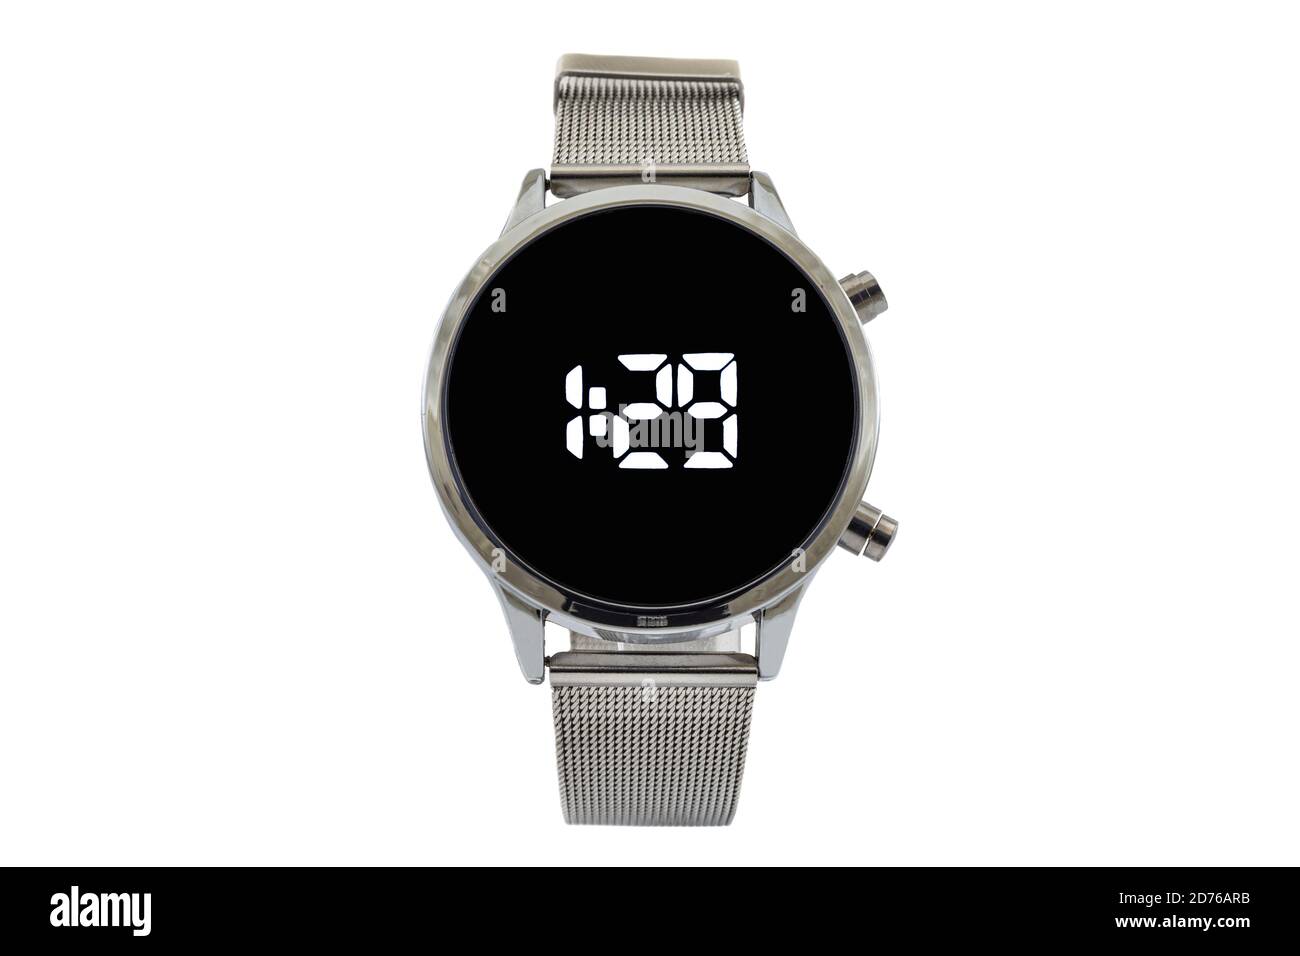 Smartwatch rotondo argento con cinturino in mesh, quadrante nero e numeri digitali, isolato su sfondo bianco. Foto Stock